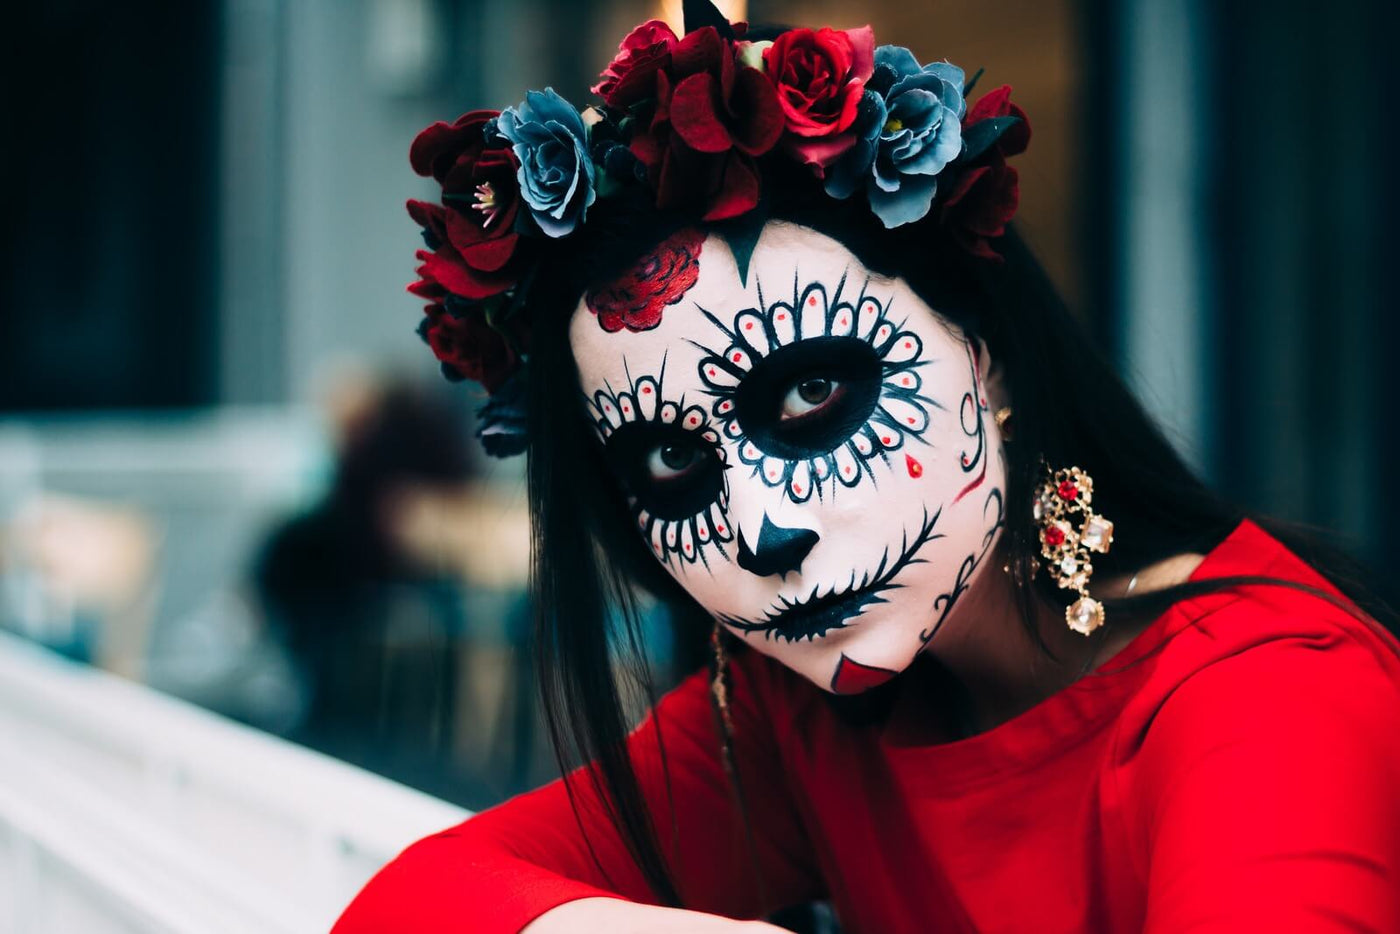 Caveiras mexicanas: saiba como fazer a maquiagem passo a passo